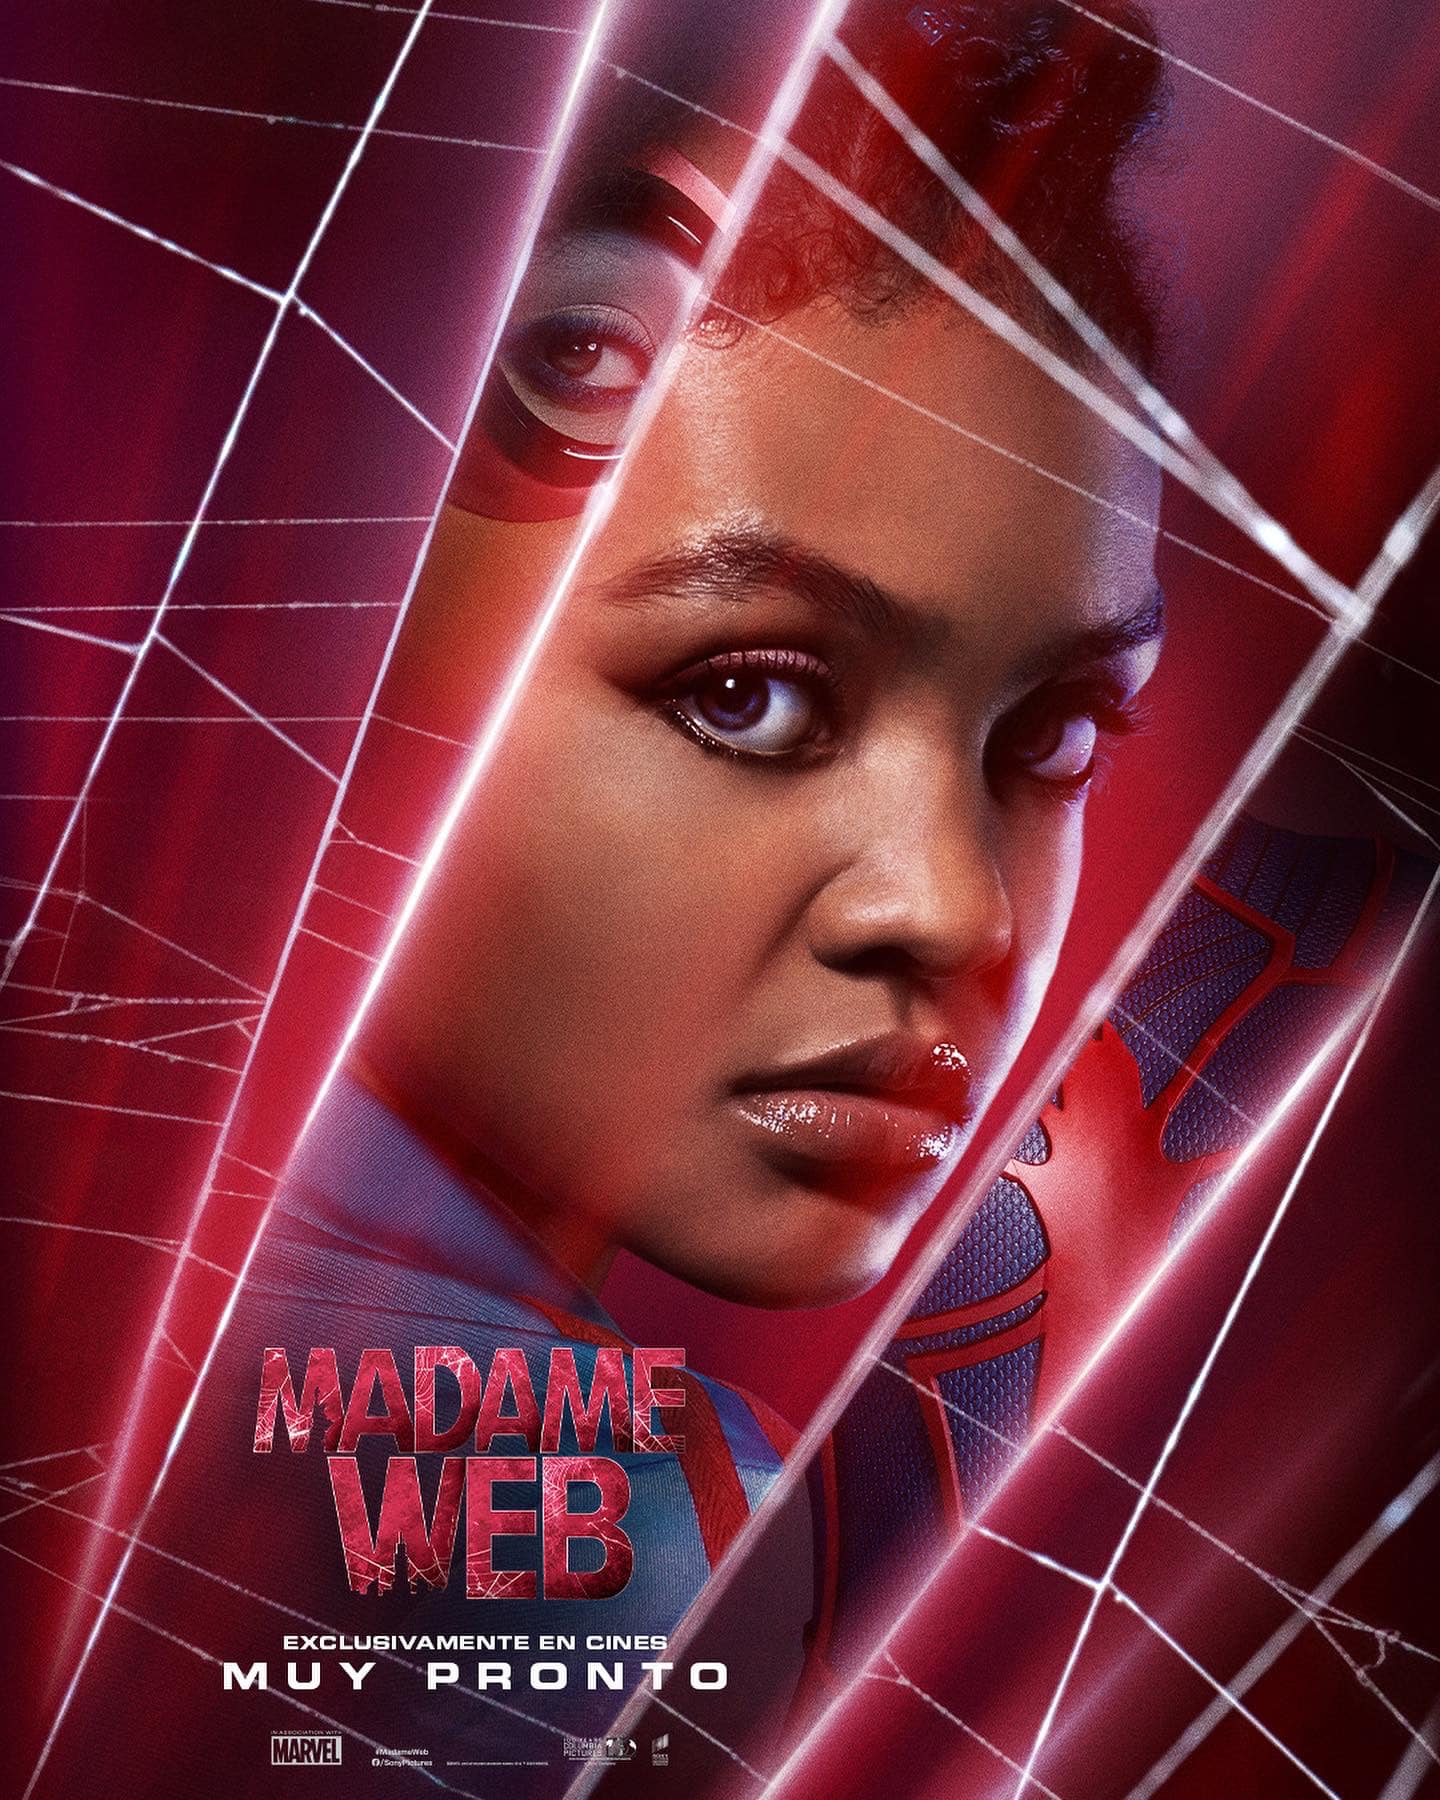 La promoción de la película Madame Web continúa, y ahora podemos ver a las protagonistas en unos nuevos pósters con su imagen.